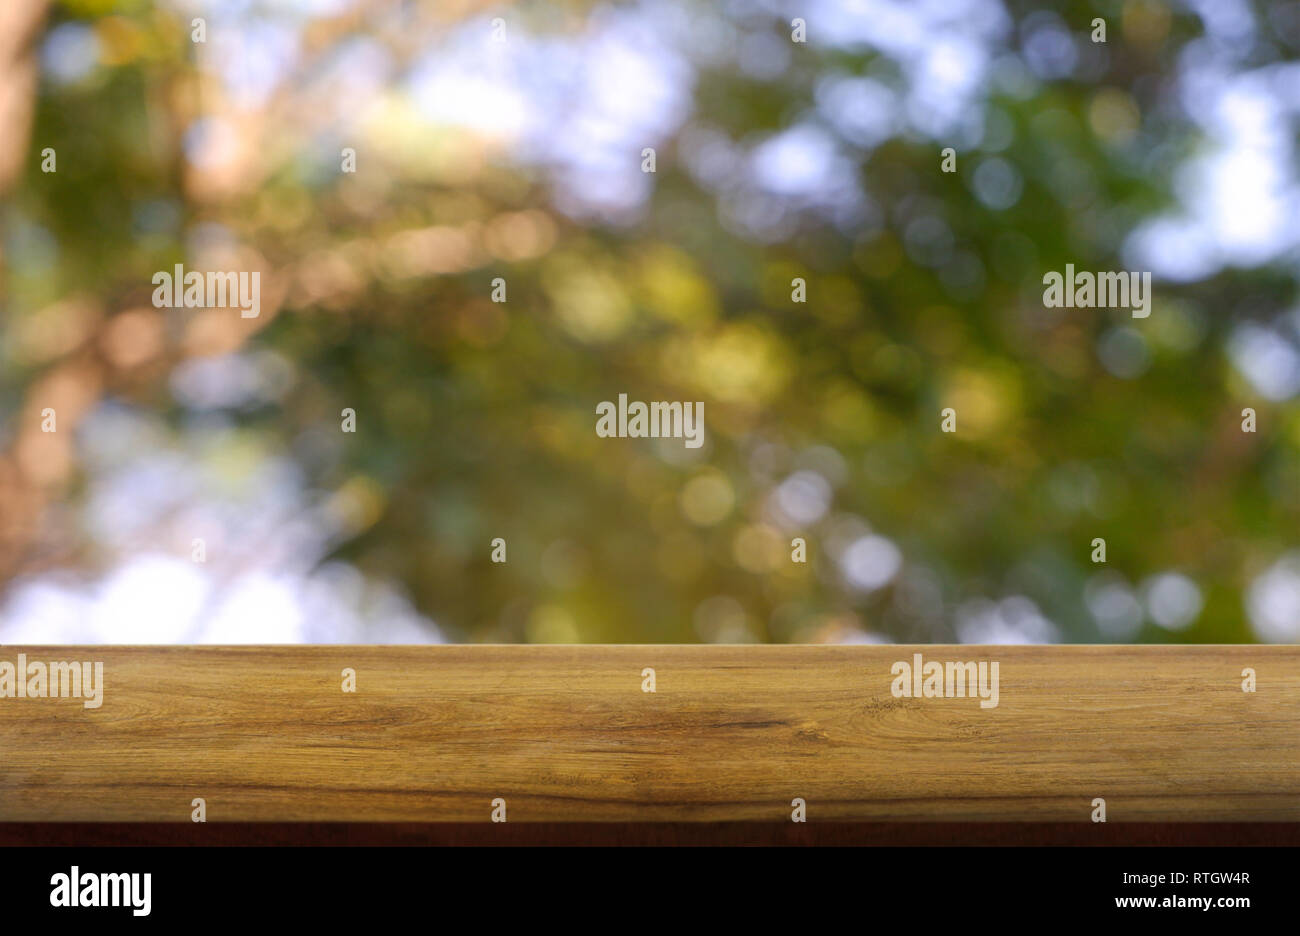 Leere Holztisch vor abstrakten verschwommen grünen Garten und Natur hellen Hintergrund. Für die Montage des Produkts angezeigt oder Design Key Visual Layout - Stockfoto